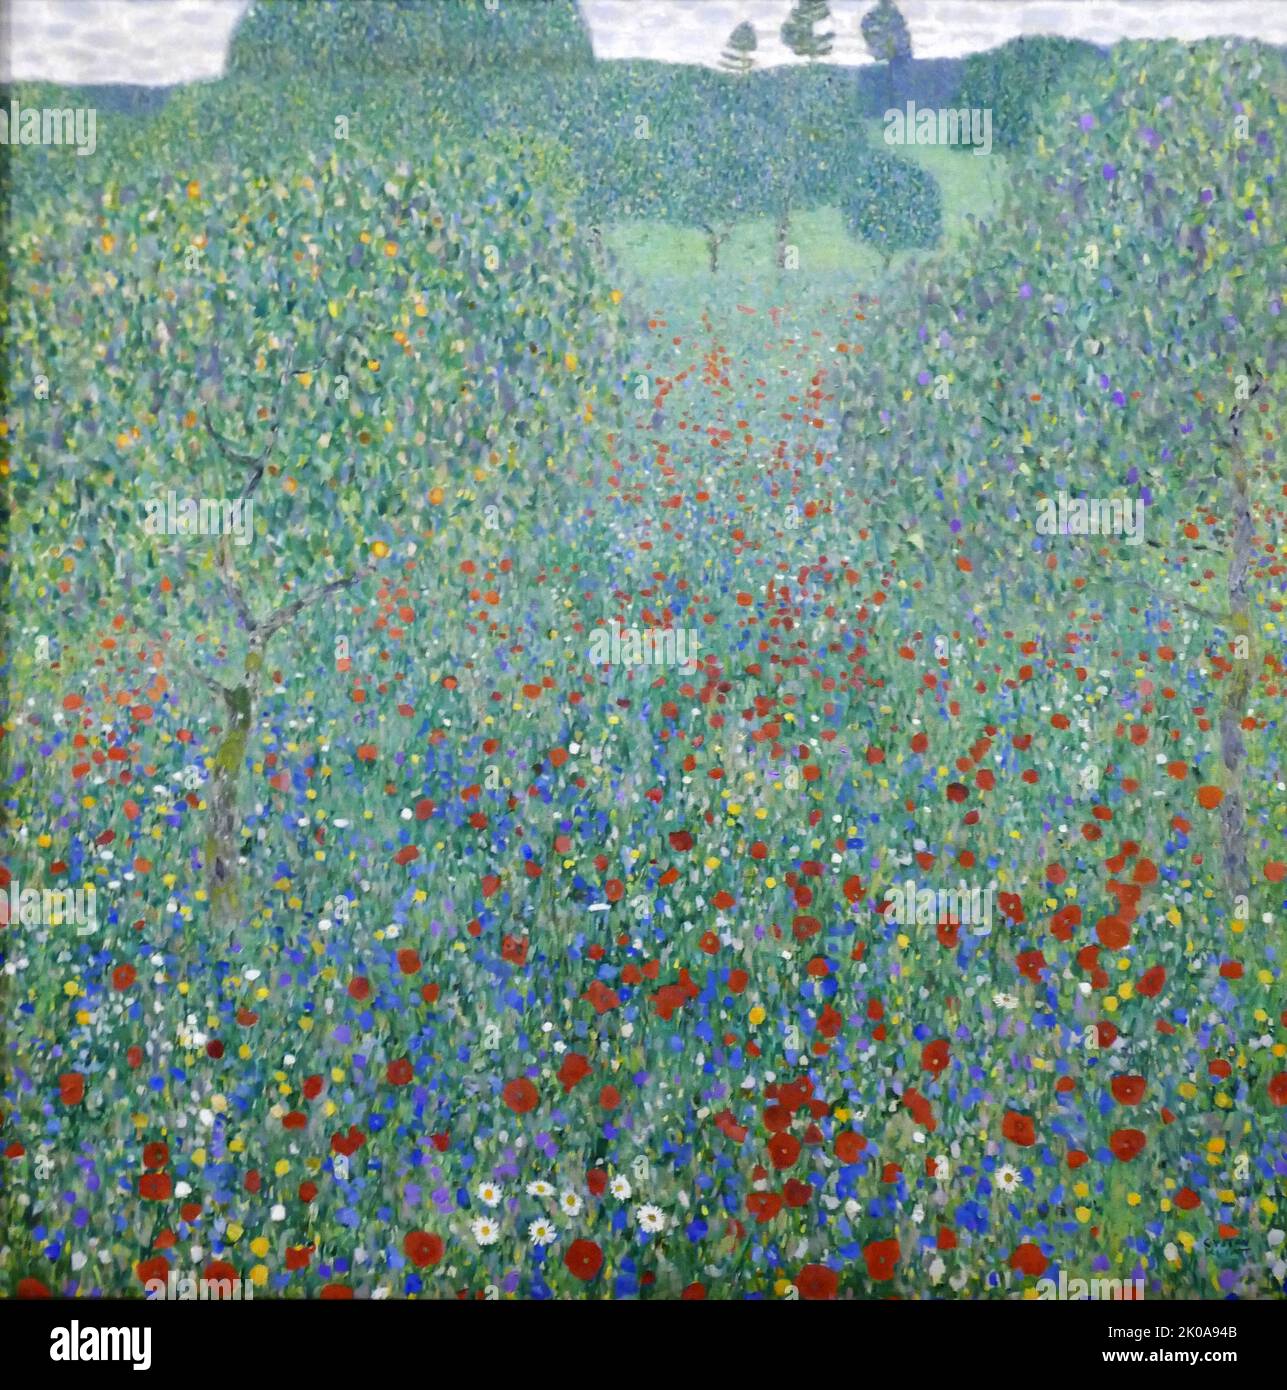 Coquelicots fleuris, 1907. Champ de pavot. Huile sur toile par Gustav Klimt. Gustav Klimt (14 juillet 1862 - 6 février 1918) était un peintre symboliste autrichien et l'un des membres les plus éminents du mouvement de la sécession de Vienne. Klimt est réputé pour ses peintures, peintures murales, croquis et autres objets d'art Banque D'Images